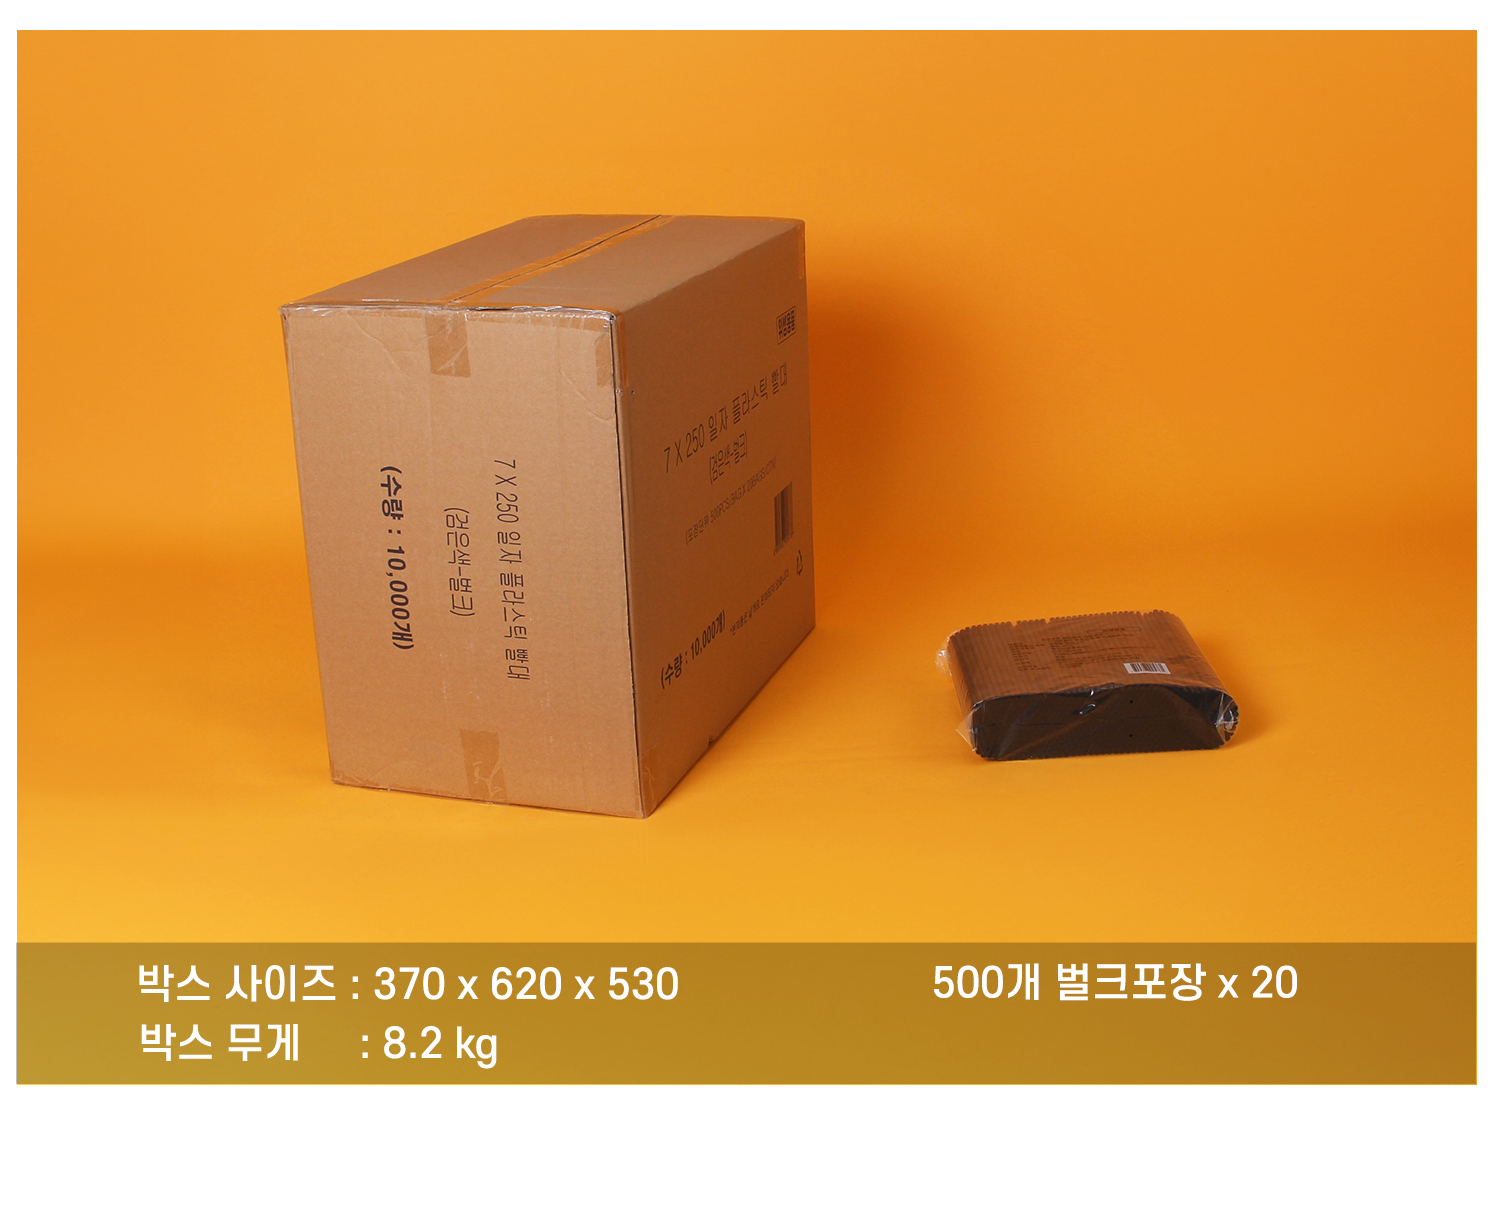 플라스틱일자빨대의 배송되는 박스와 소포장된 단위가 보이는 이미지